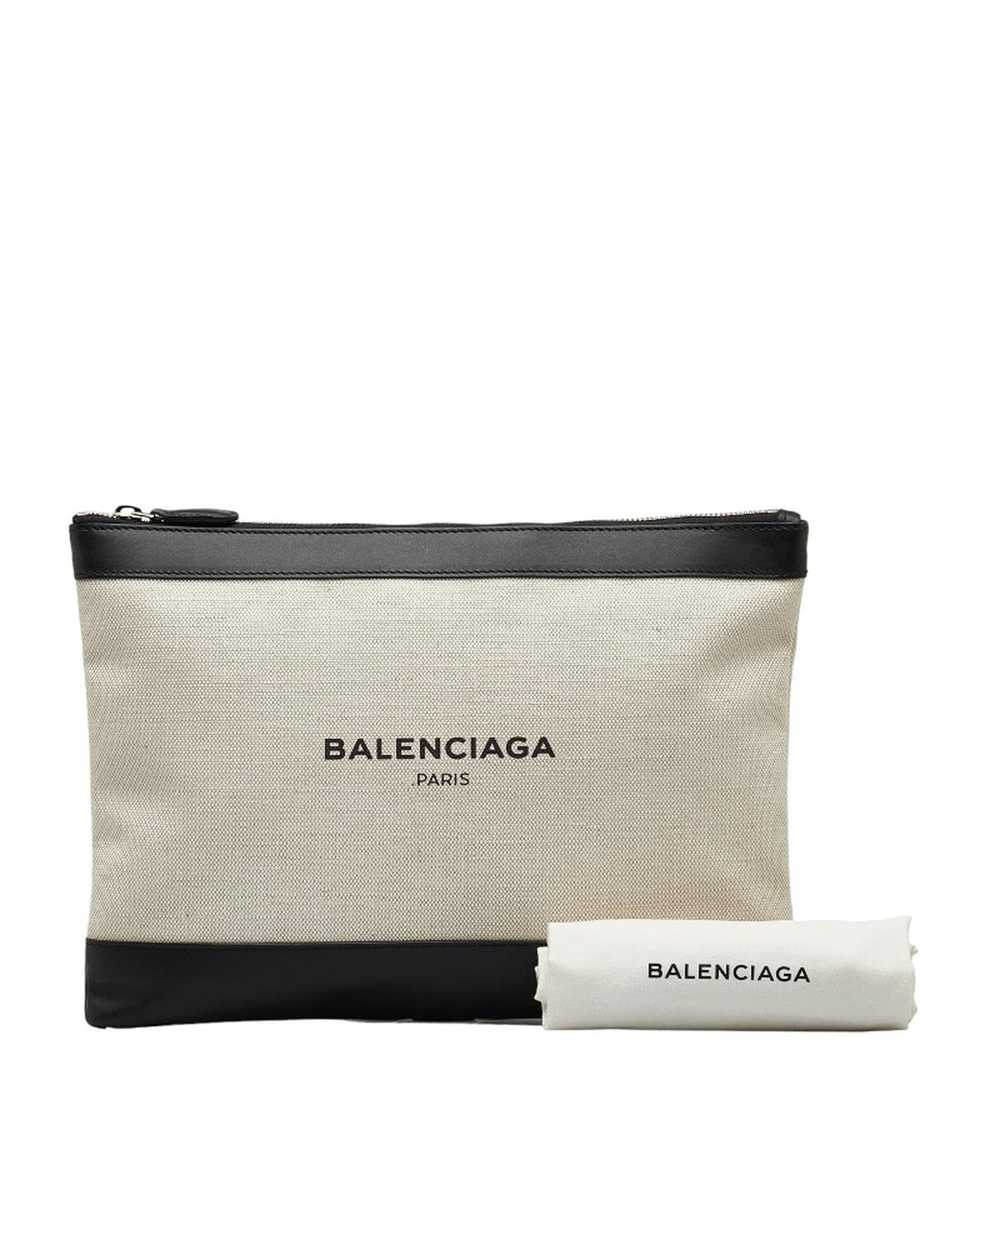 Balenciaga Navy Canvas Clutch Bag in Excellent Co… - image 9